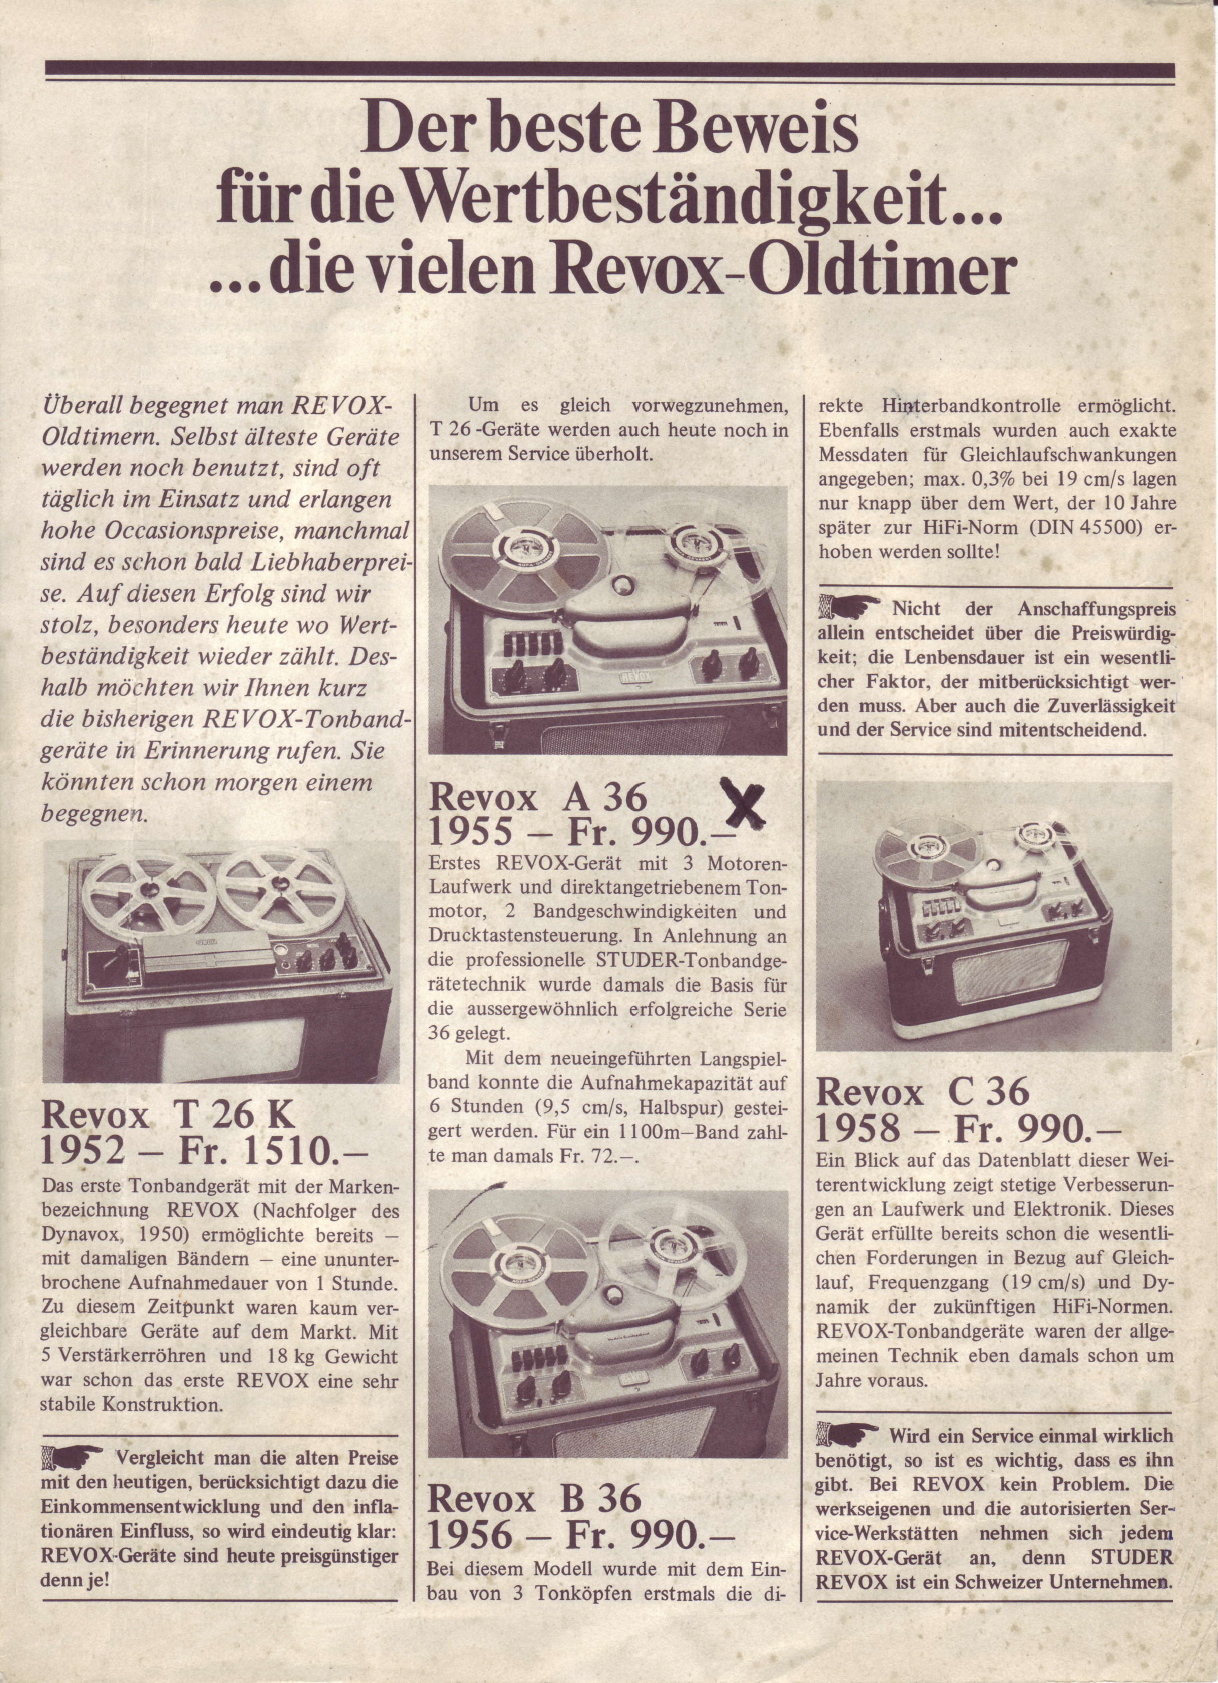 Revox 36 Tonbandhistorie-Bericht-1968.jpg